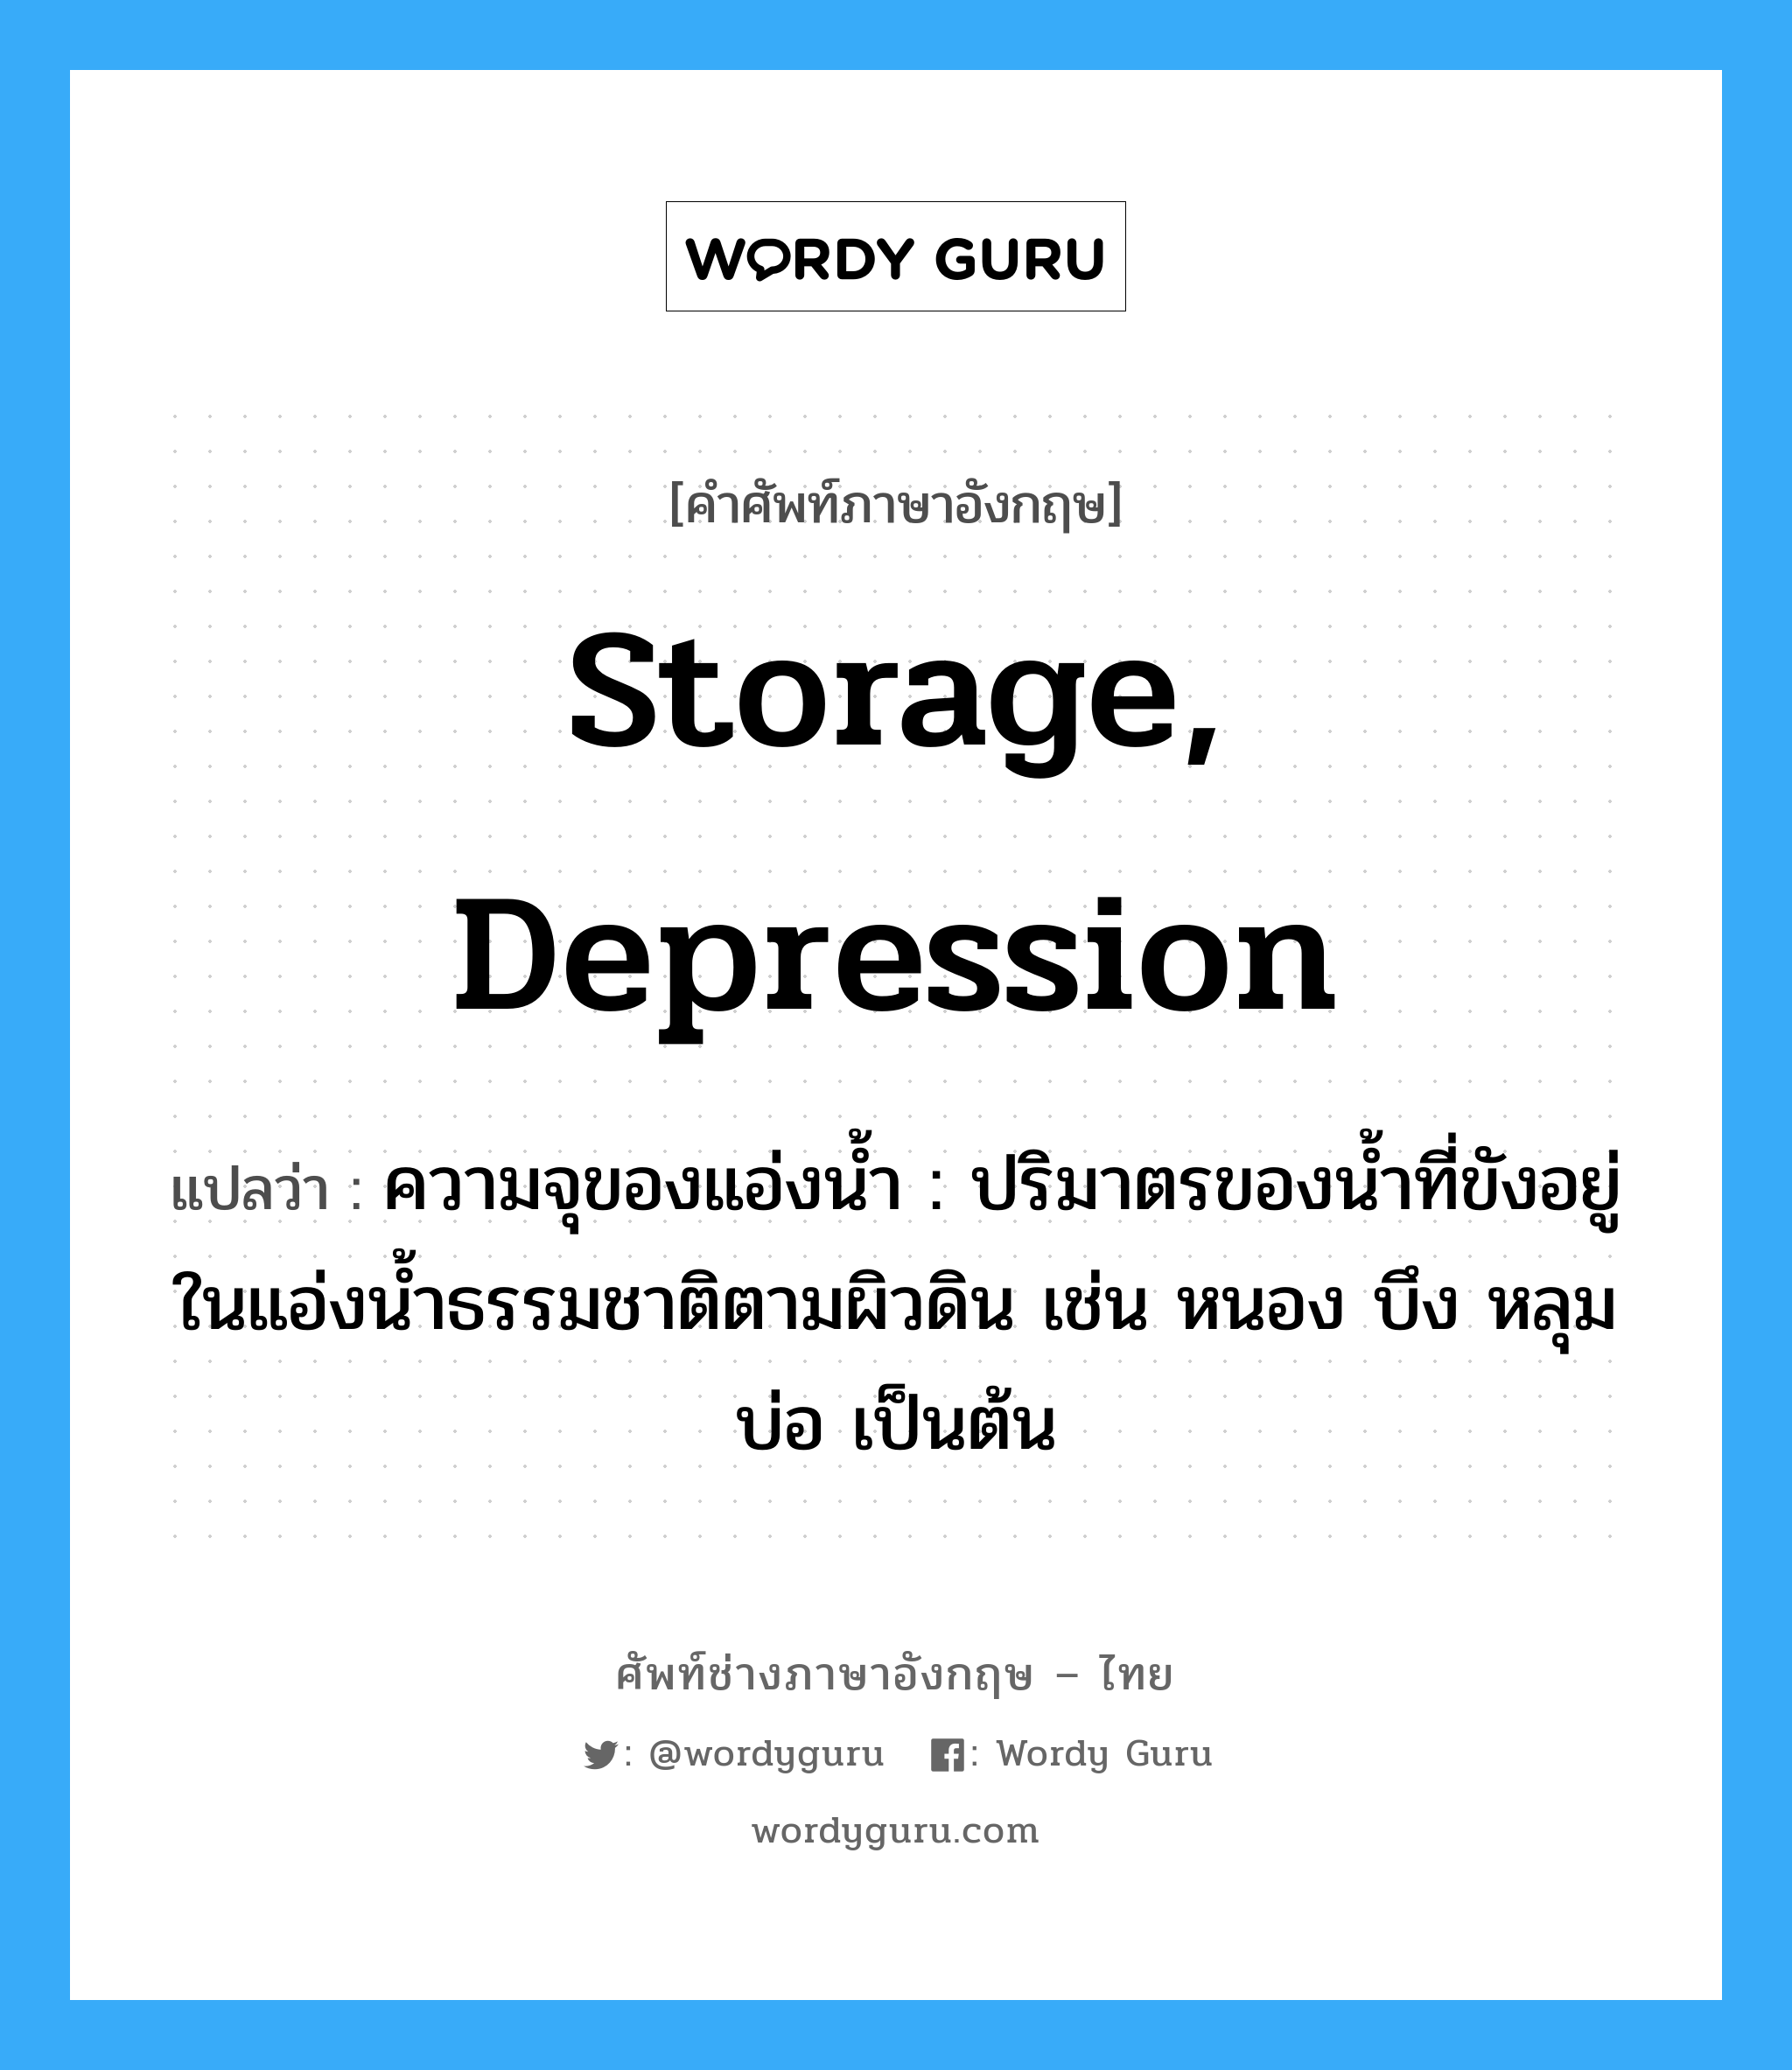 storage, depression แปลว่า?, คำศัพท์ช่างภาษาอังกฤษ - ไทย storage, depression คำศัพท์ภาษาอังกฤษ storage, depression แปลว่า ความจุของแอ่งน้ำ : ปริมาตรของน้ำที่ขังอยู่ในแอ่งน้ำธรรมชาติตามผิวดิน เช่น หนอง บึง หลุมบ่อ เป็นต้น